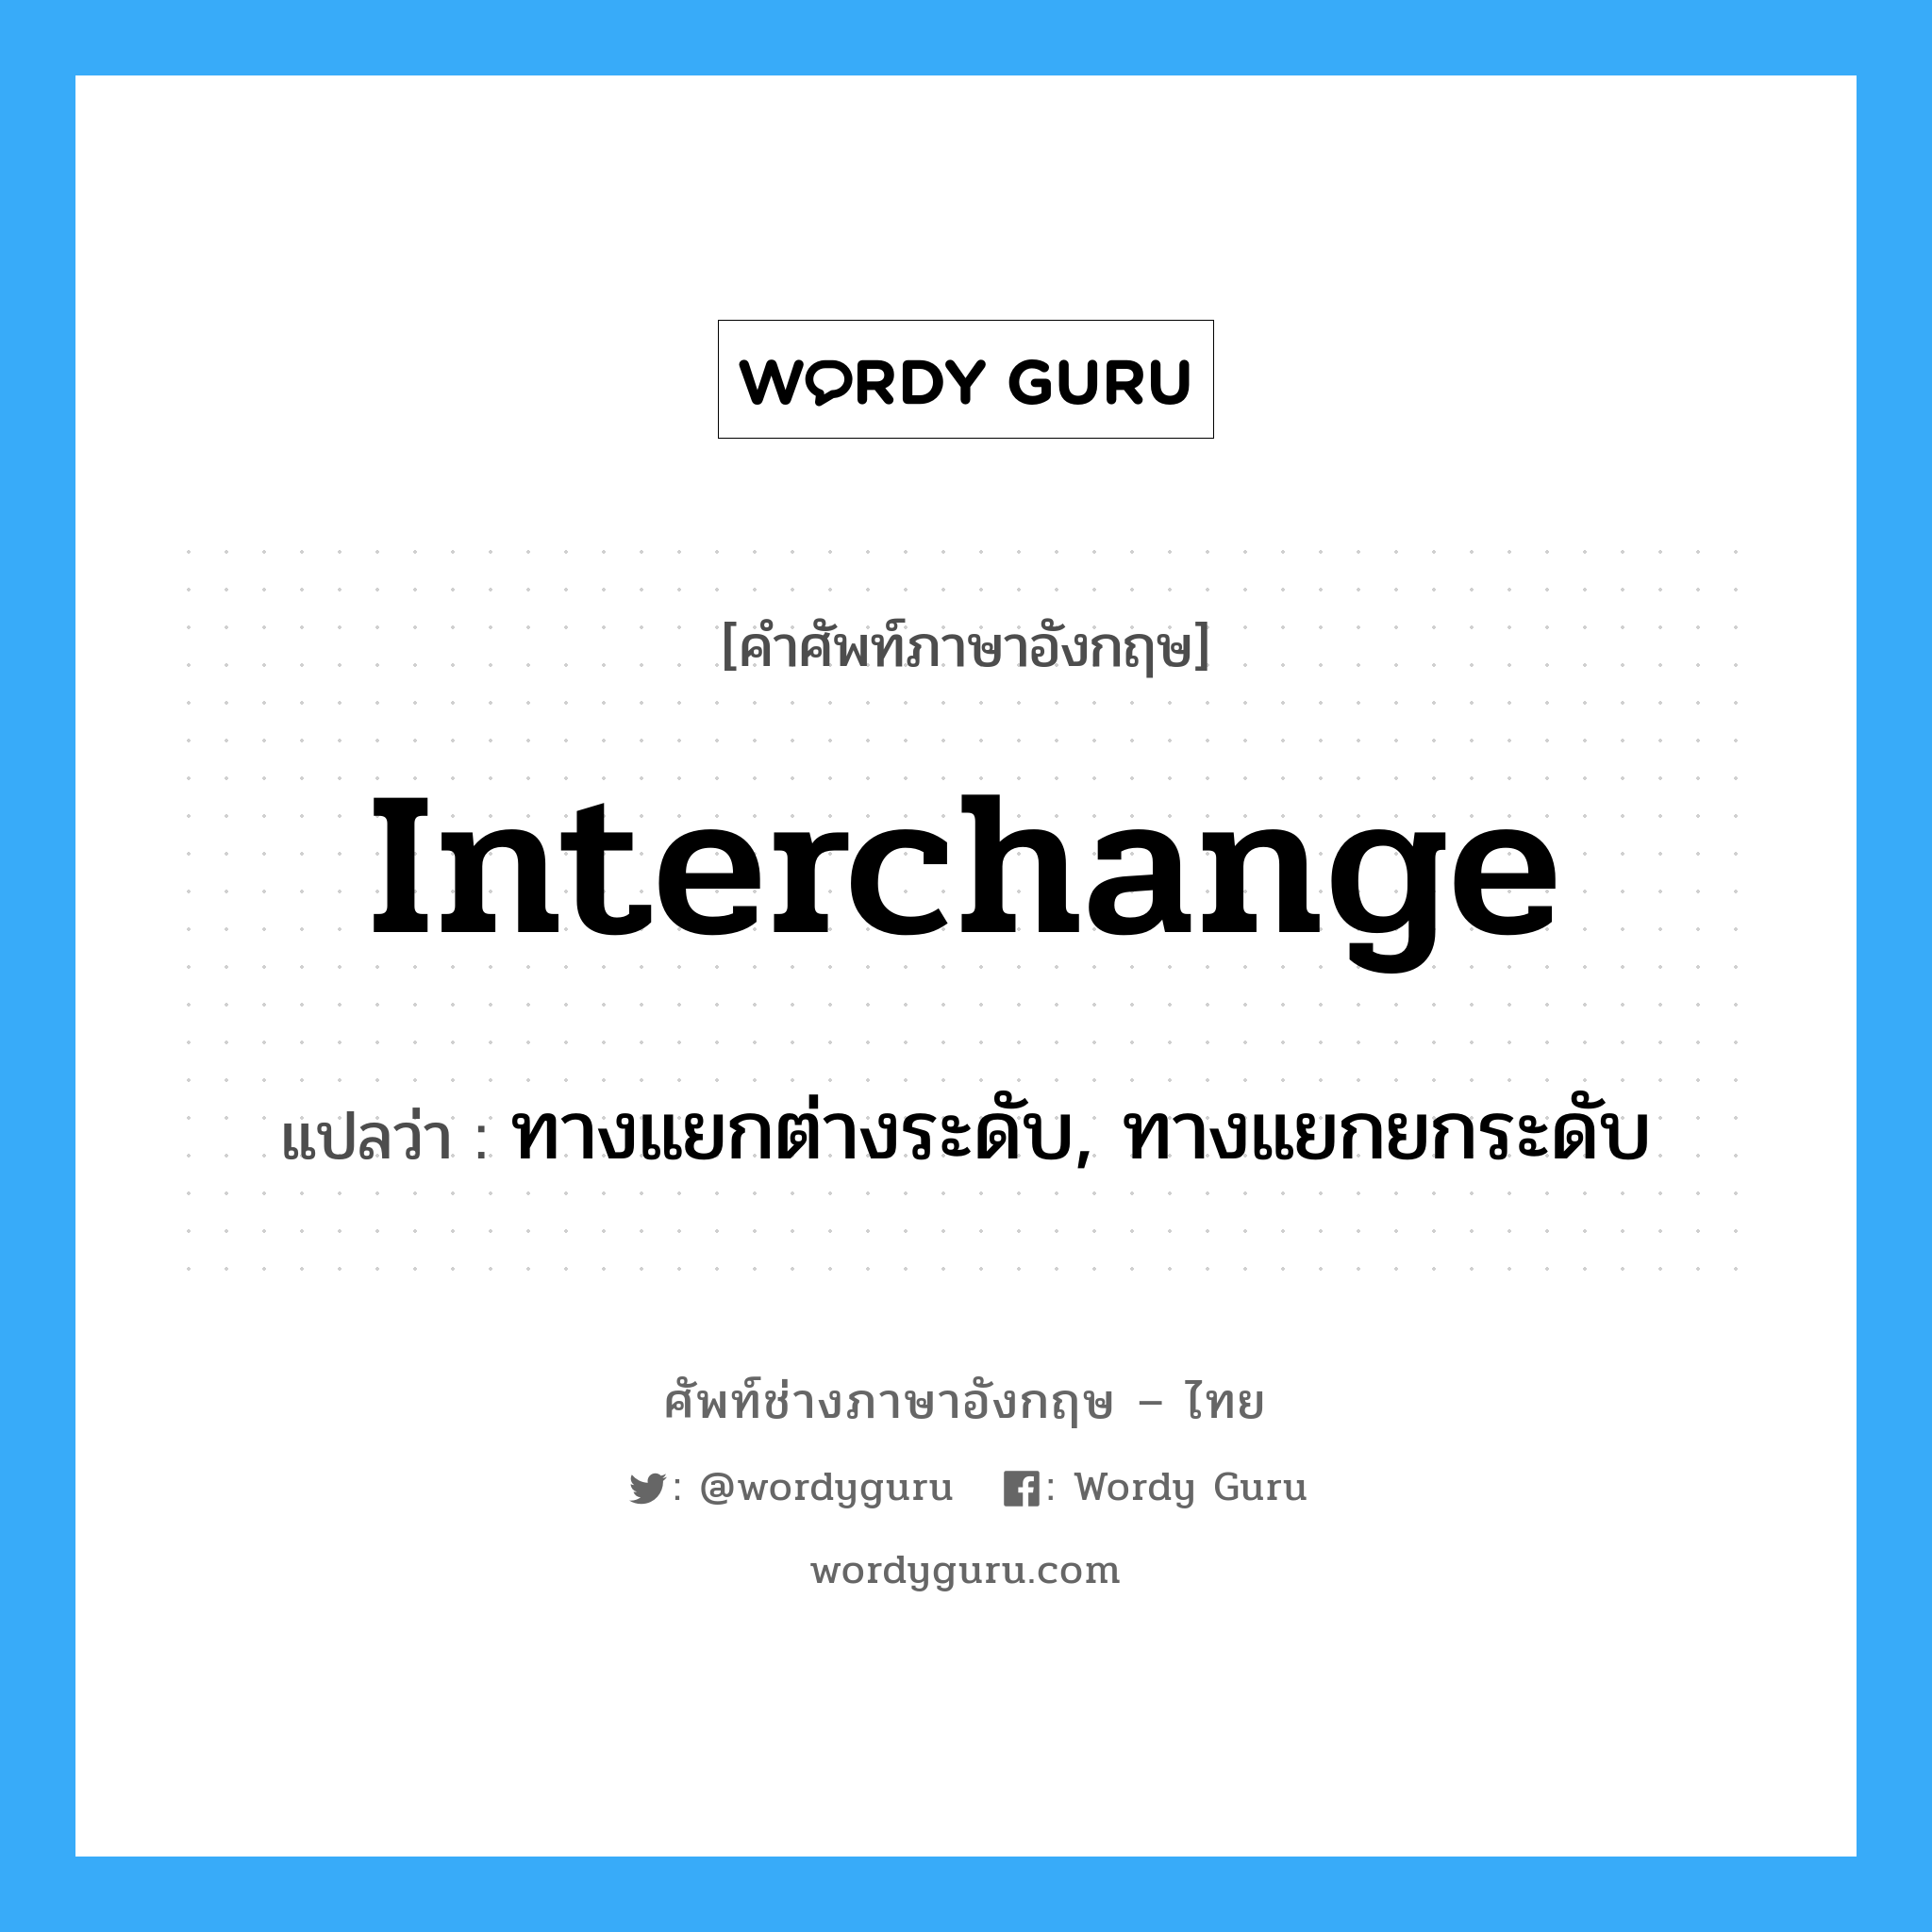 ทางแยกต่างระดับ, ทางแยกยกระดับ ภาษาอังกฤษ?, คำศัพท์ช่างภาษาอังกฤษ - ไทย ทางแยกต่างระดับ, ทางแยกยกระดับ คำศัพท์ภาษาอังกฤษ ทางแยกต่างระดับ, ทางแยกยกระดับ แปลว่า interchange